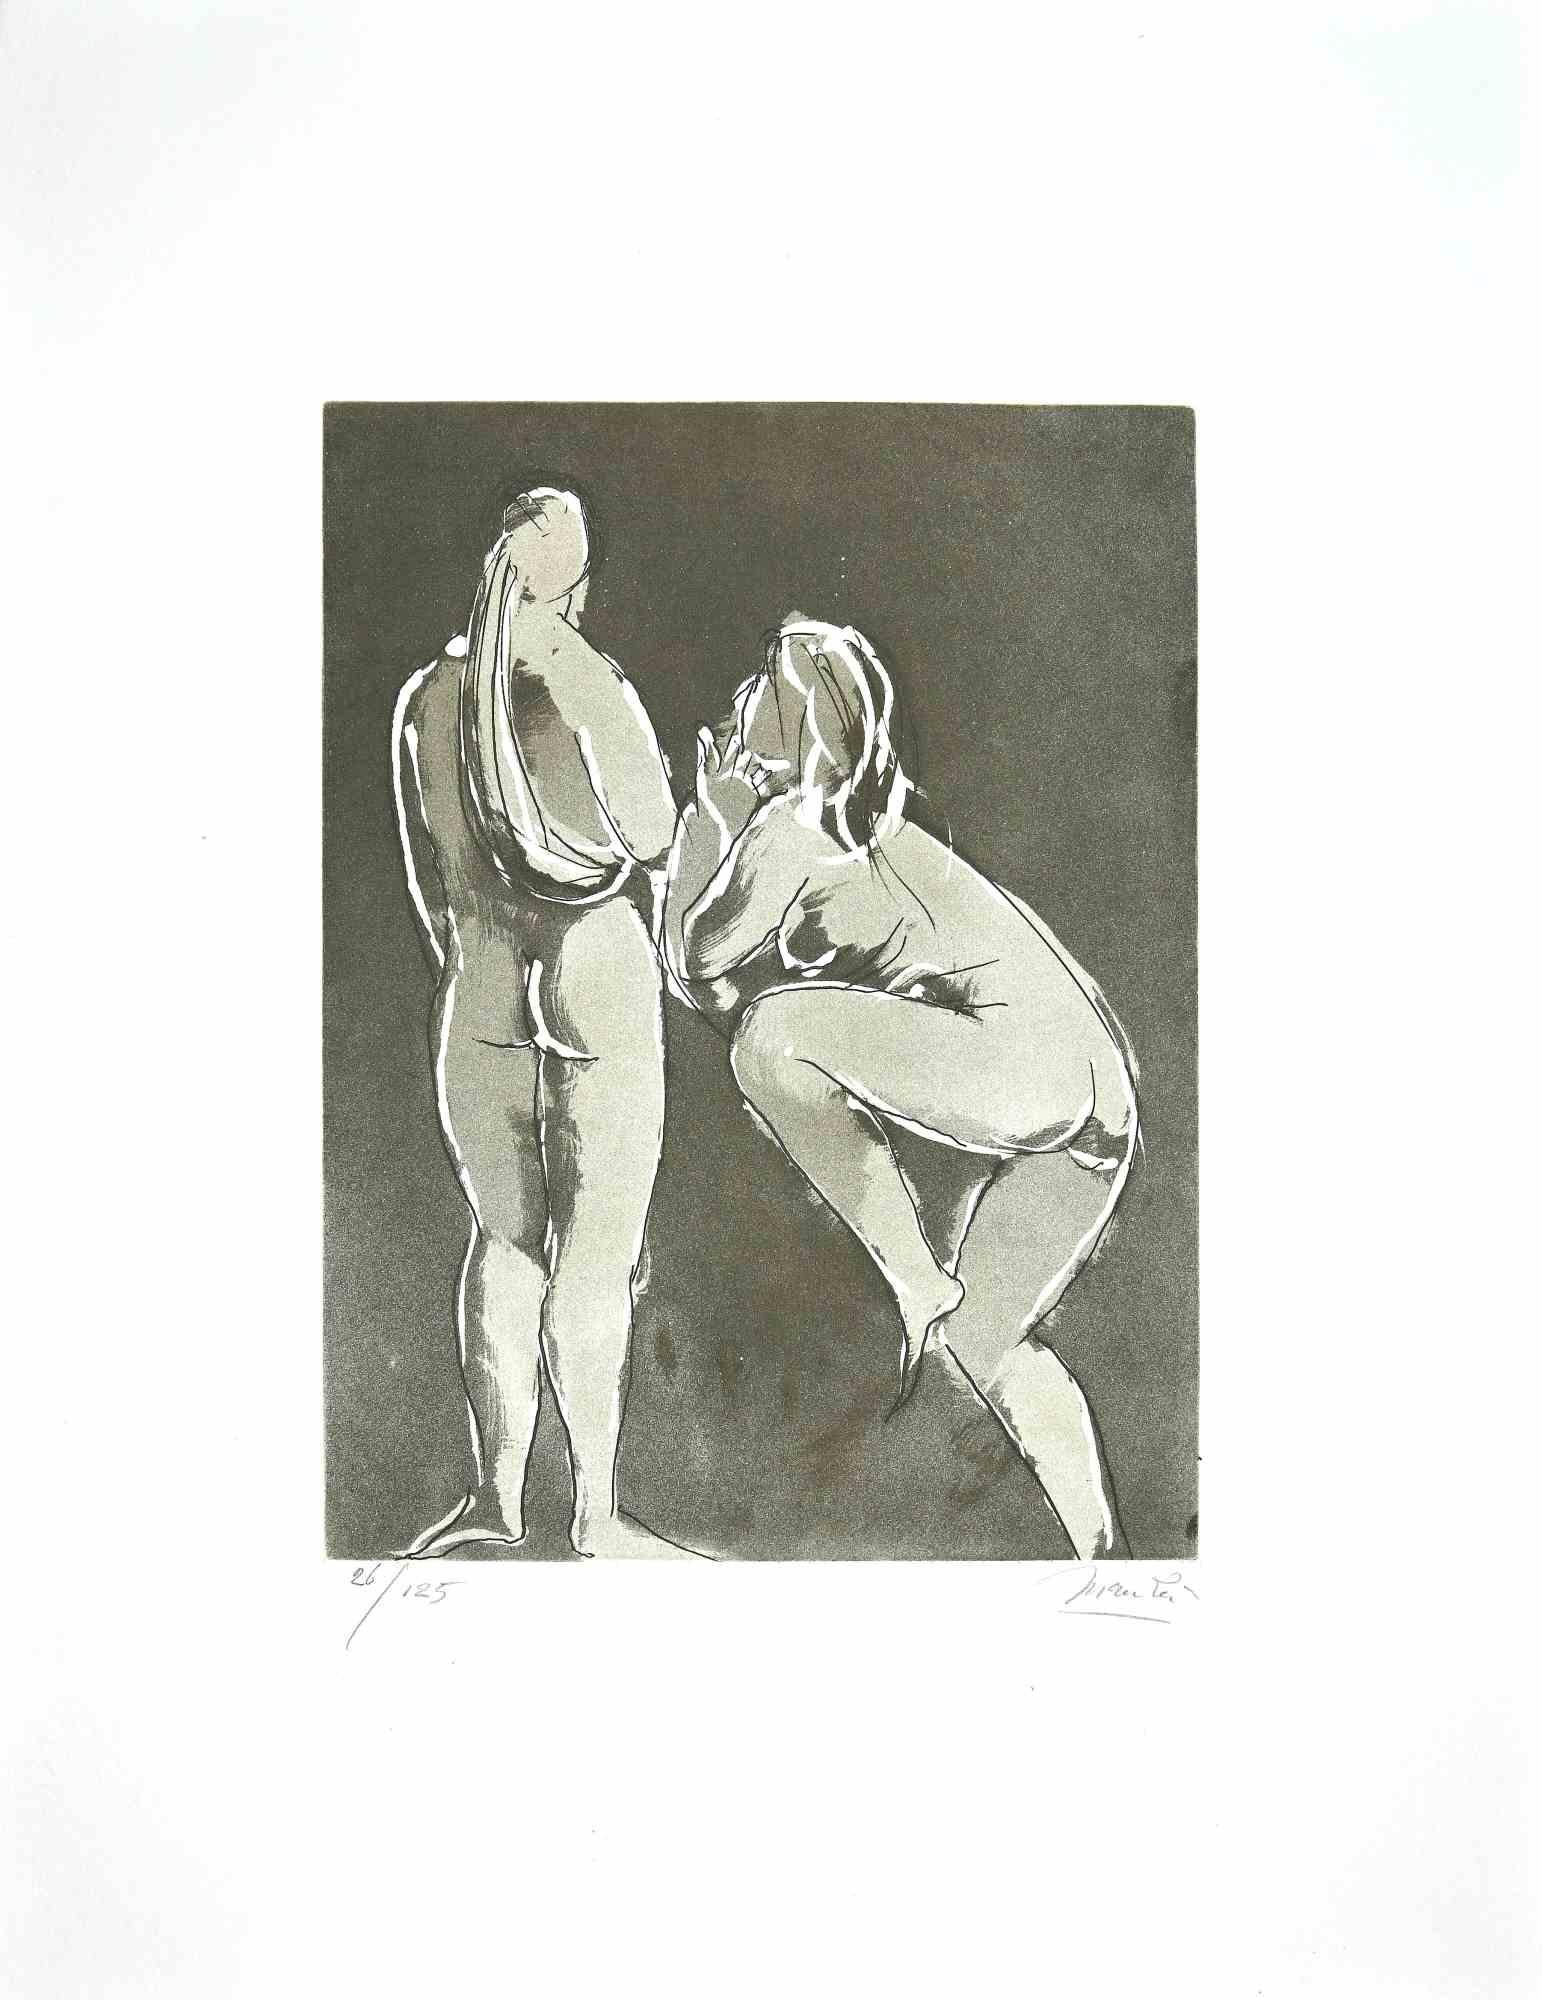 Giacomo Manzú Figurative Print - Dancers - Etching by Giacomo Manzù - 1970